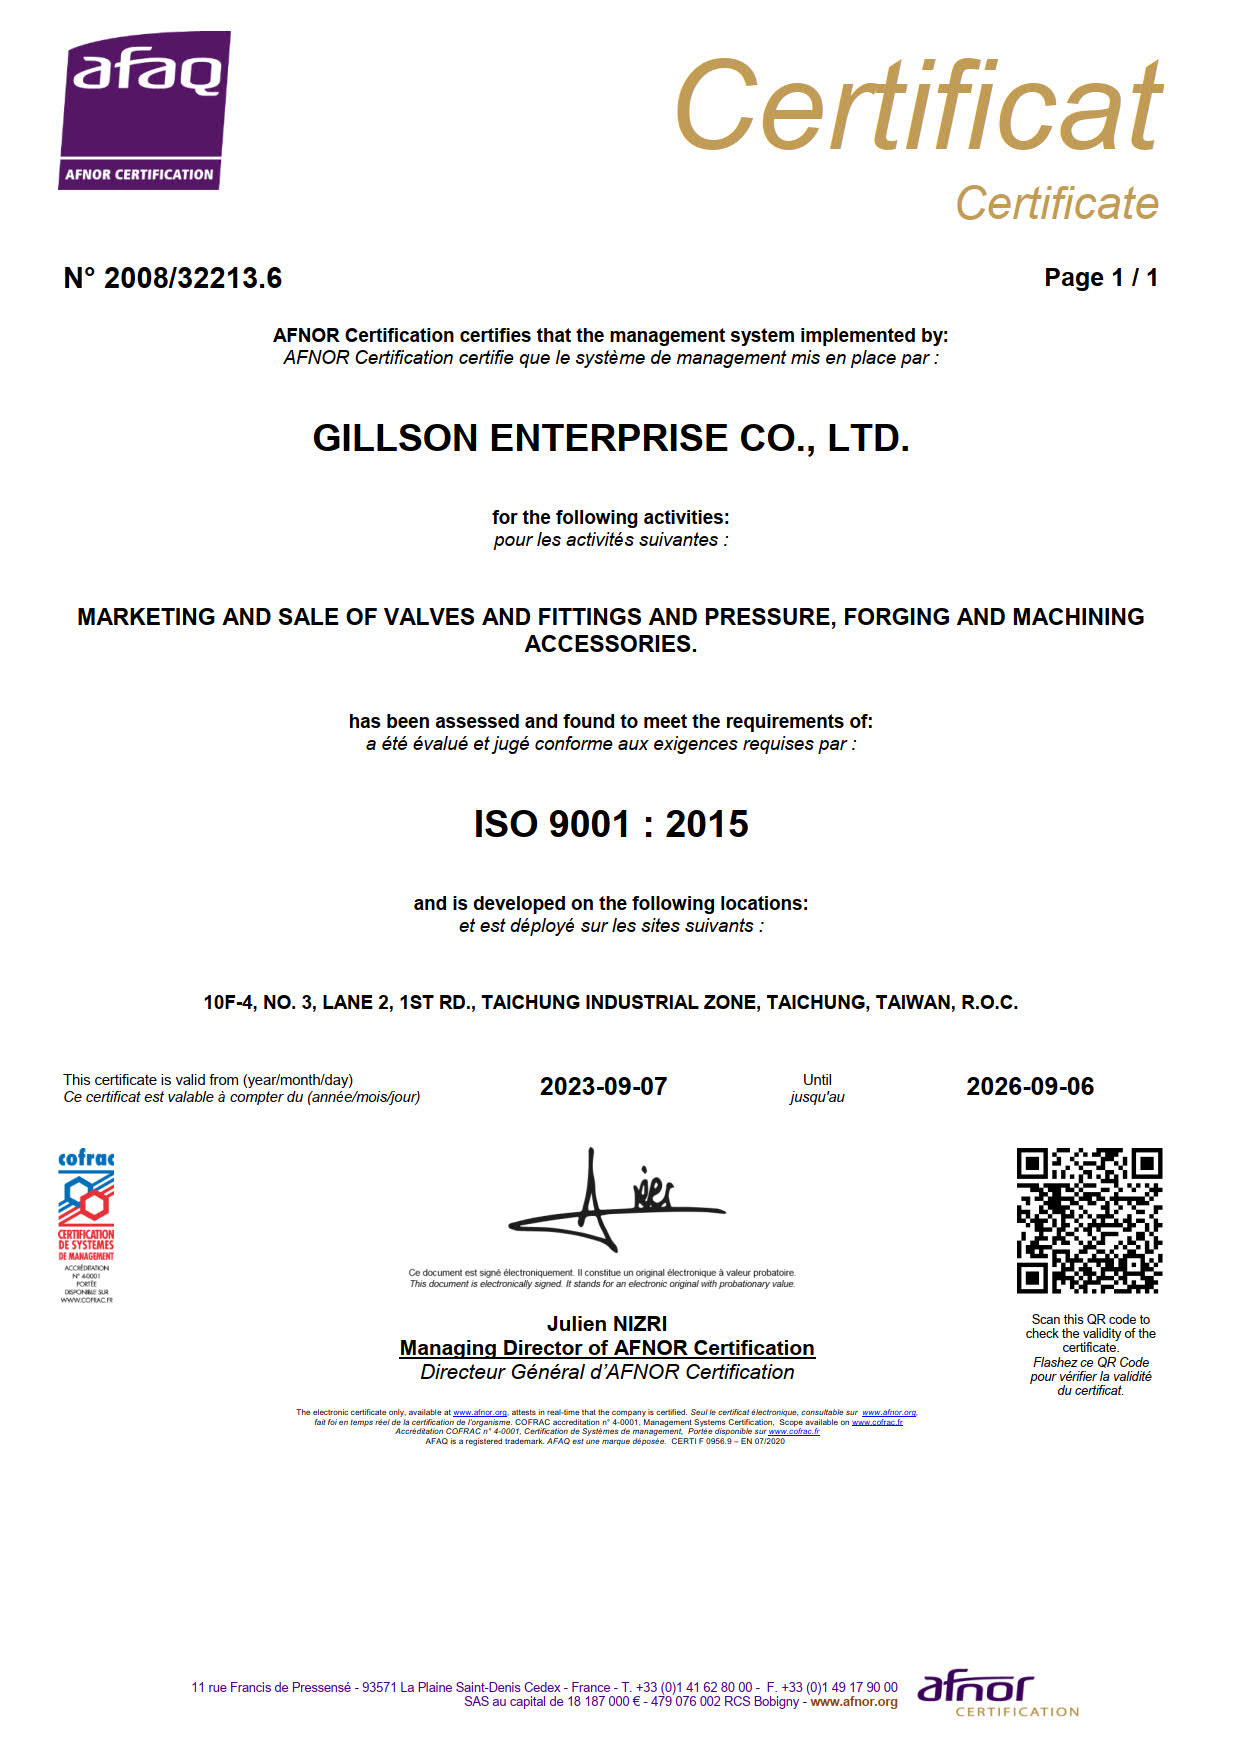 proimages/Certificate/Gillson-ISO_Certificate.jpg